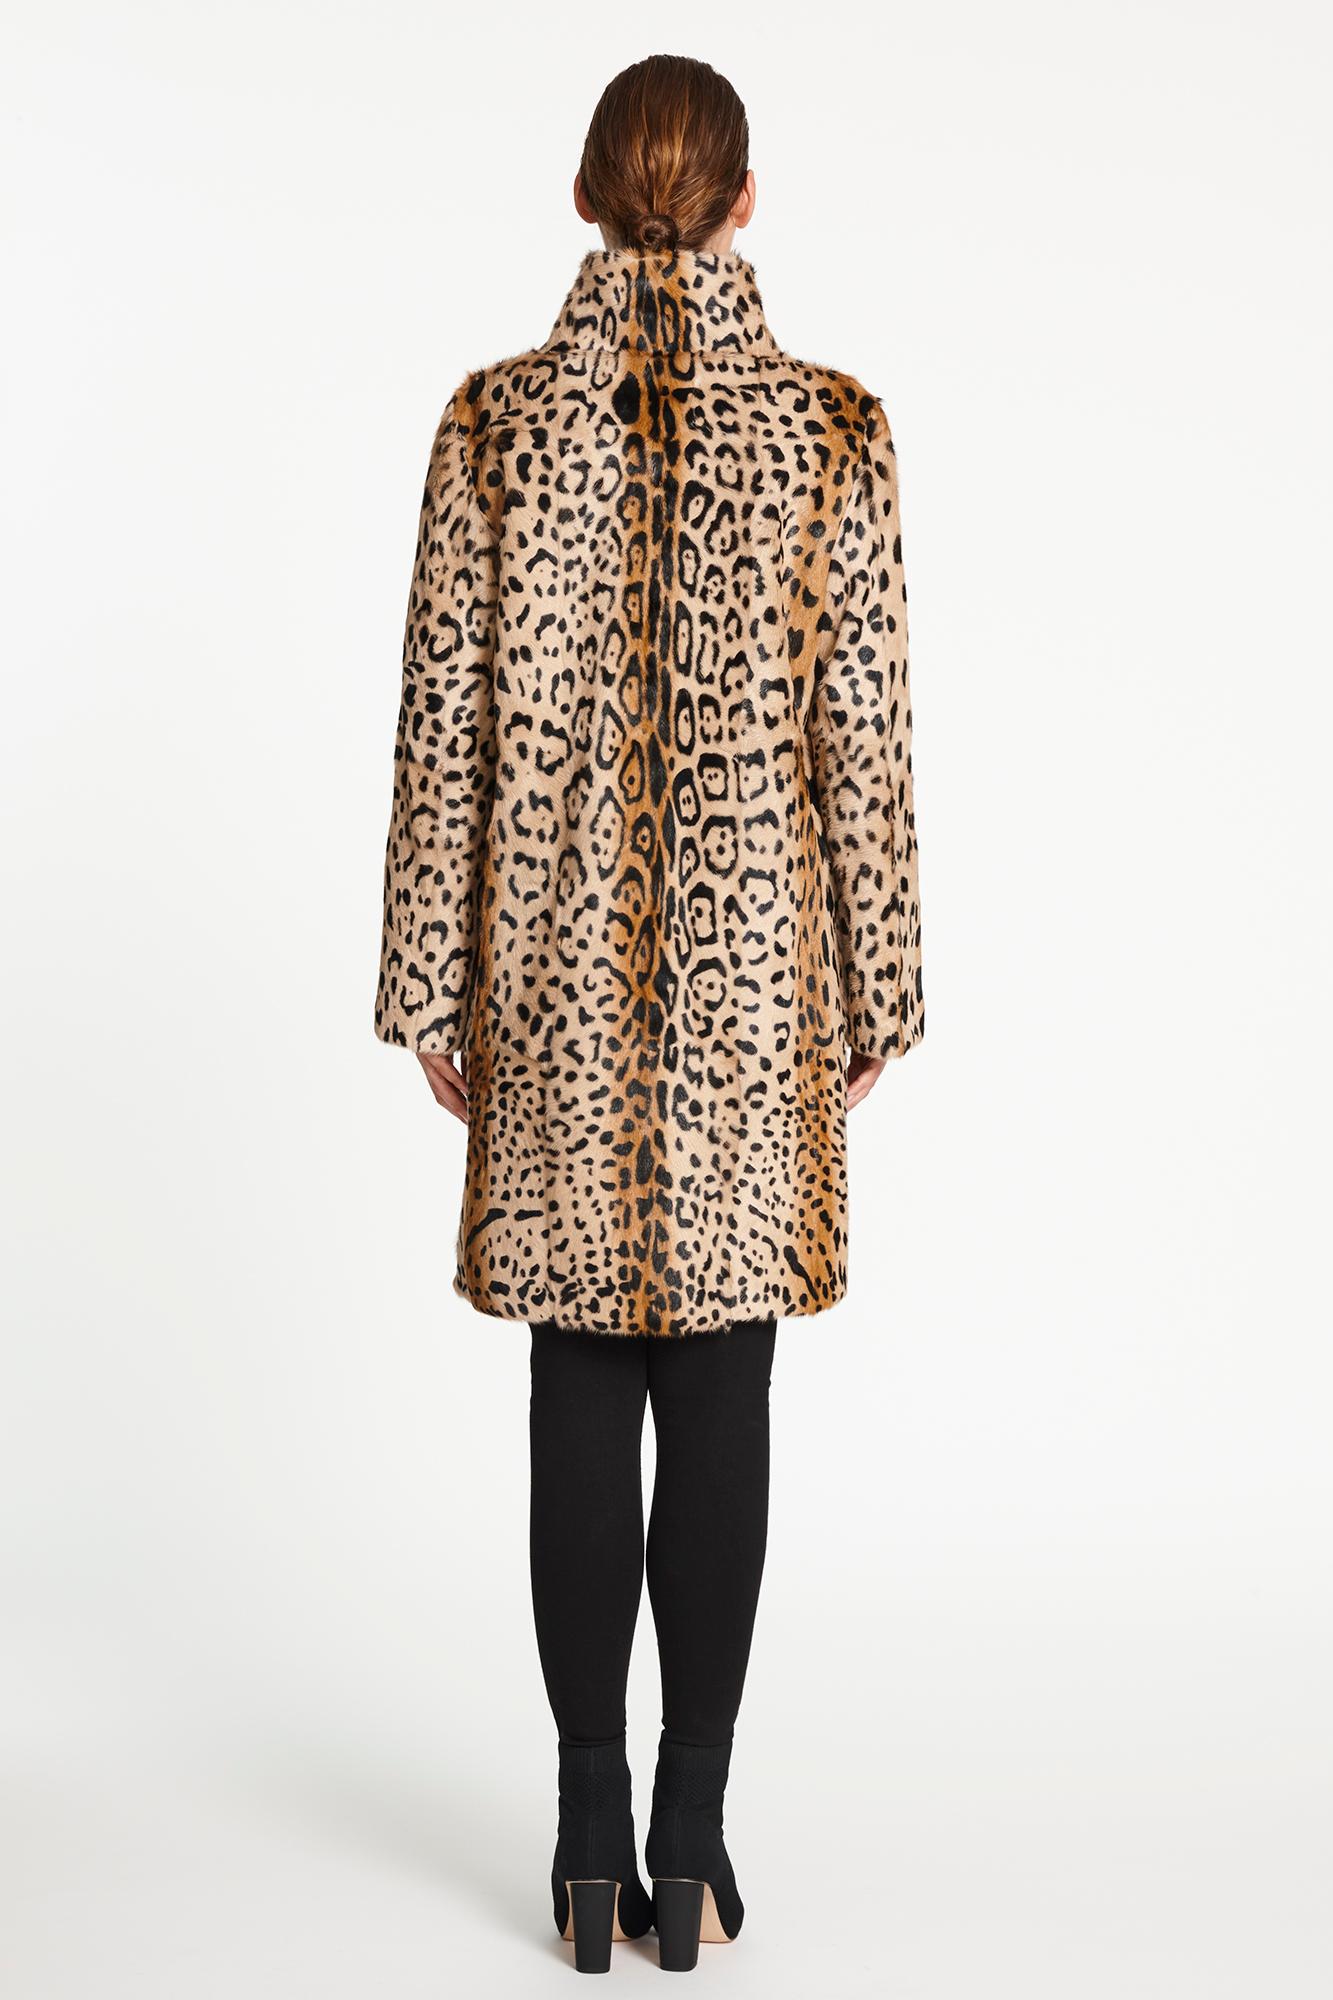 Verheyen Lon High Collar Leopard Print Coat in Goat Hair Fur Size 12-14 5